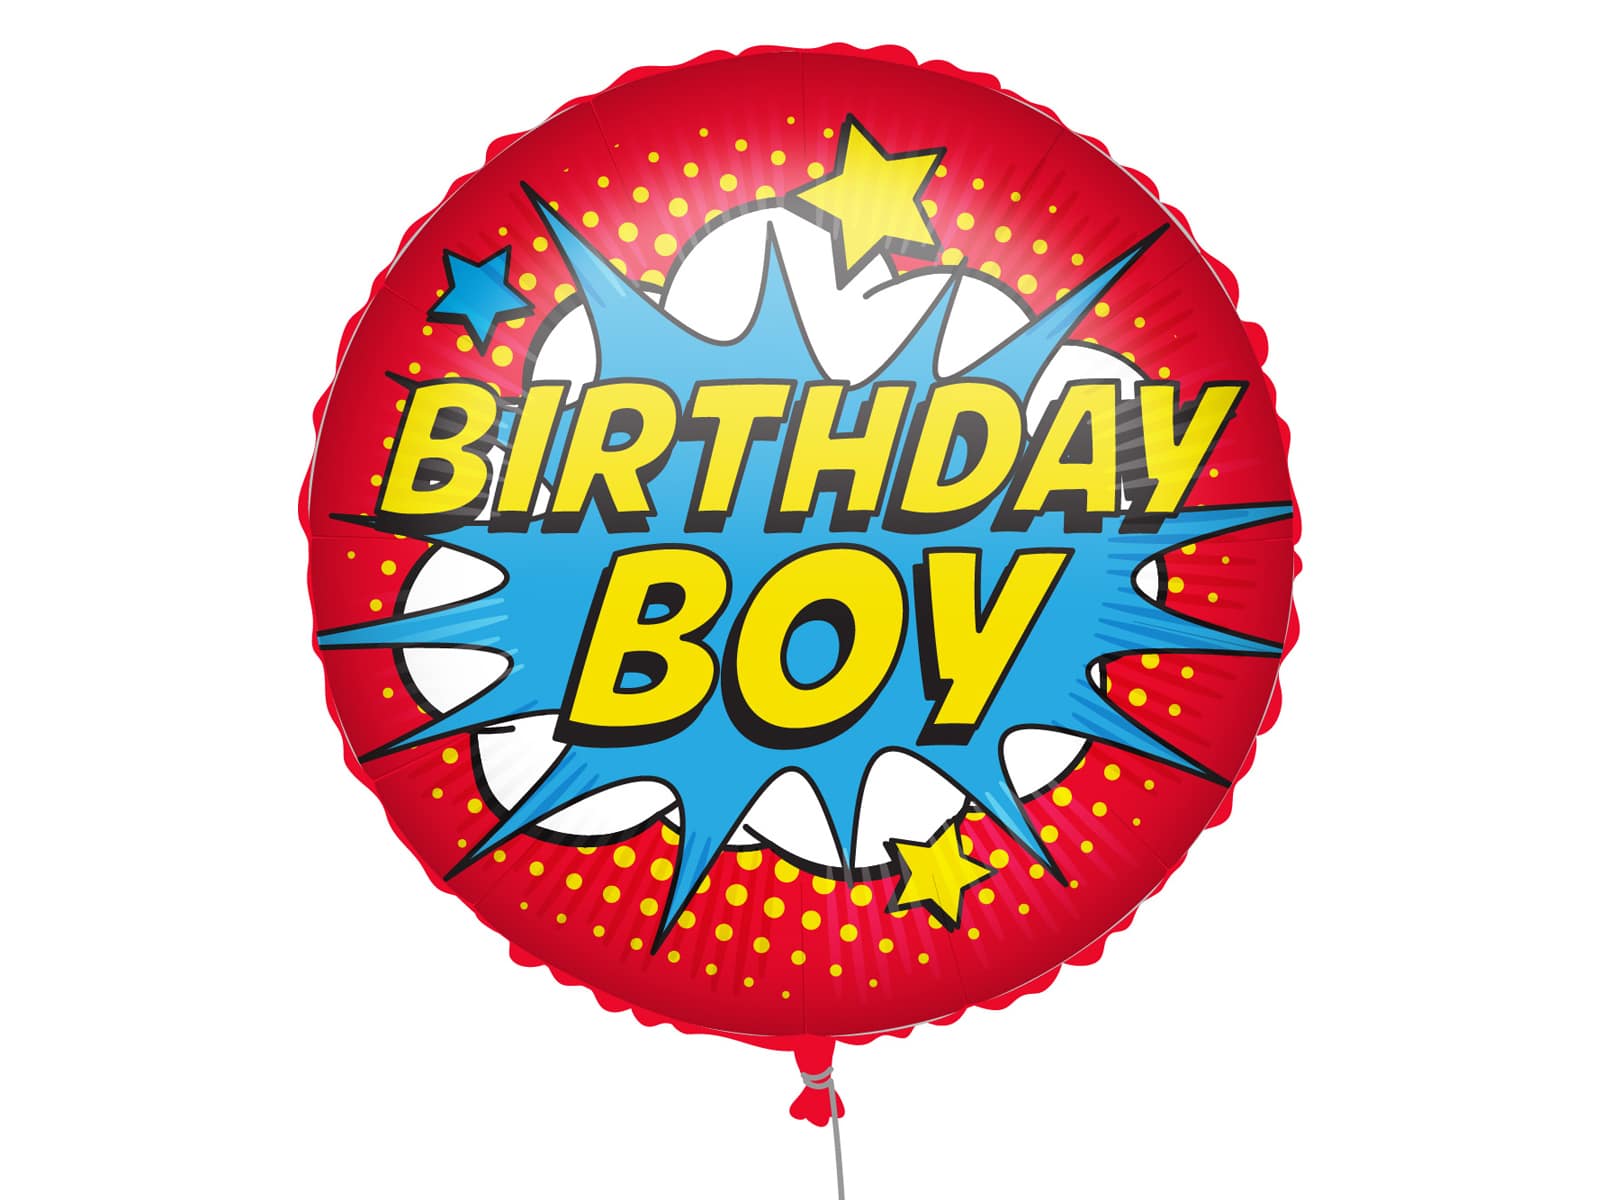 Procos Fóliový balón - Birthday Boy - komiks 46 cm